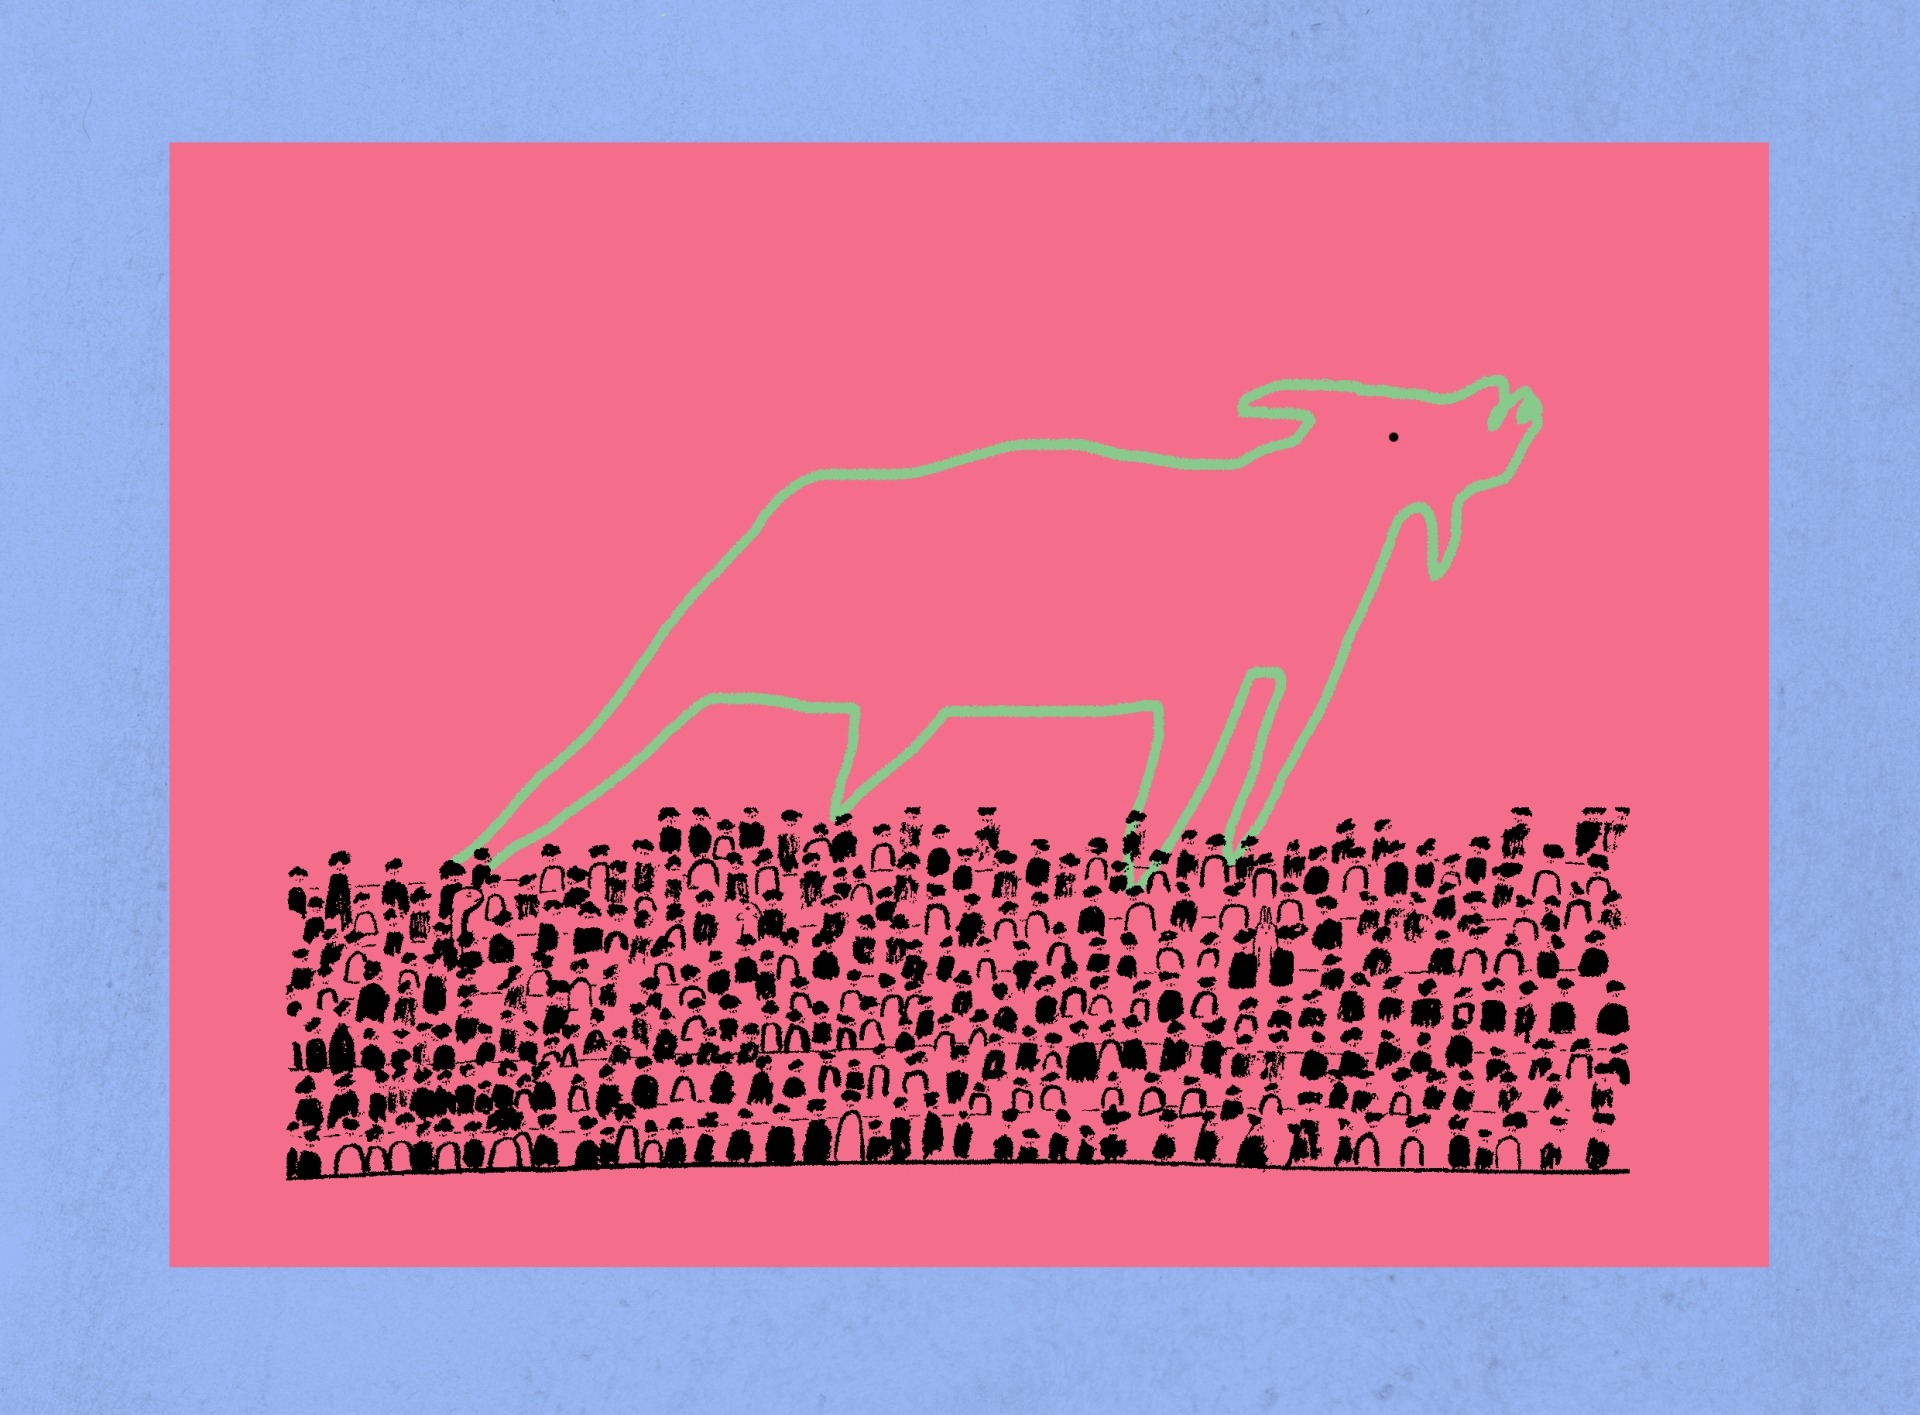 Urros, balidos e rugidos: o protesto gráfico-onomatopeico dos animais